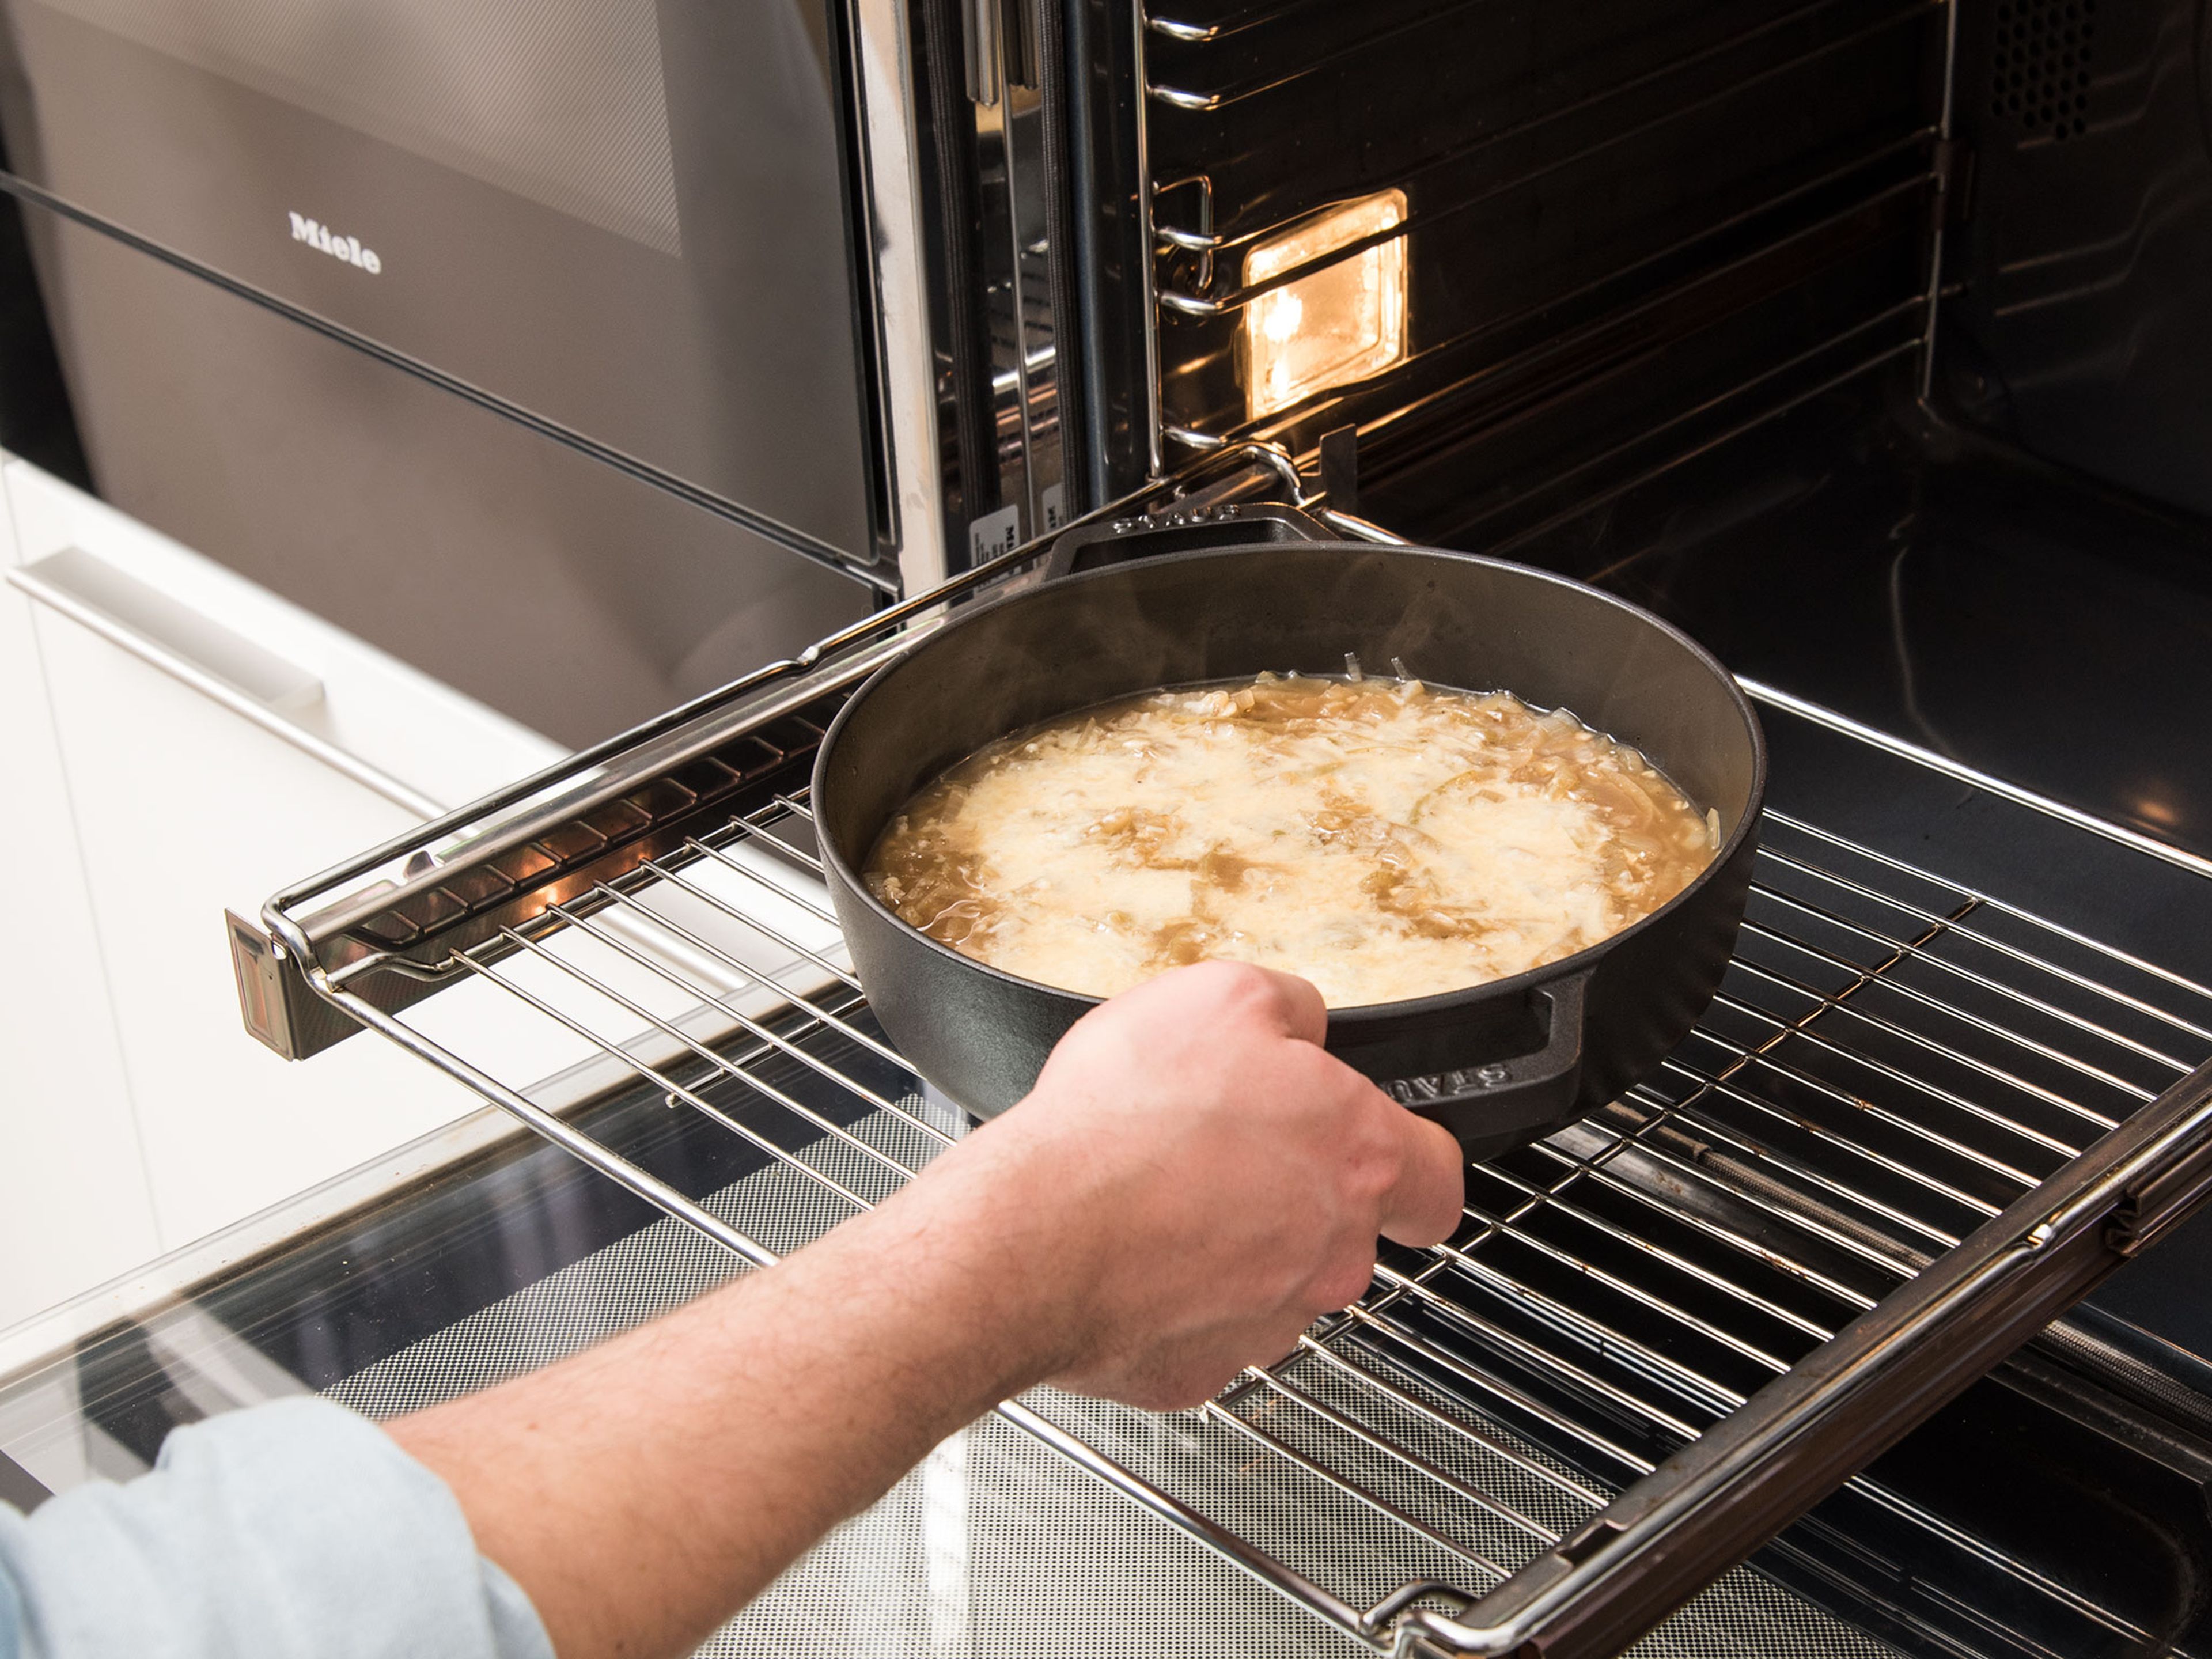 Backofen auf 200°C vorheizen. Die Suppe in einen großen ofenfesten Topf, vorzugsweise aus Gusseisen, füllen. Mit geriebenem Greyerzer bestreuen und ca. 10 Min. überbacken, oder bis der Käse geschmolzen ist.